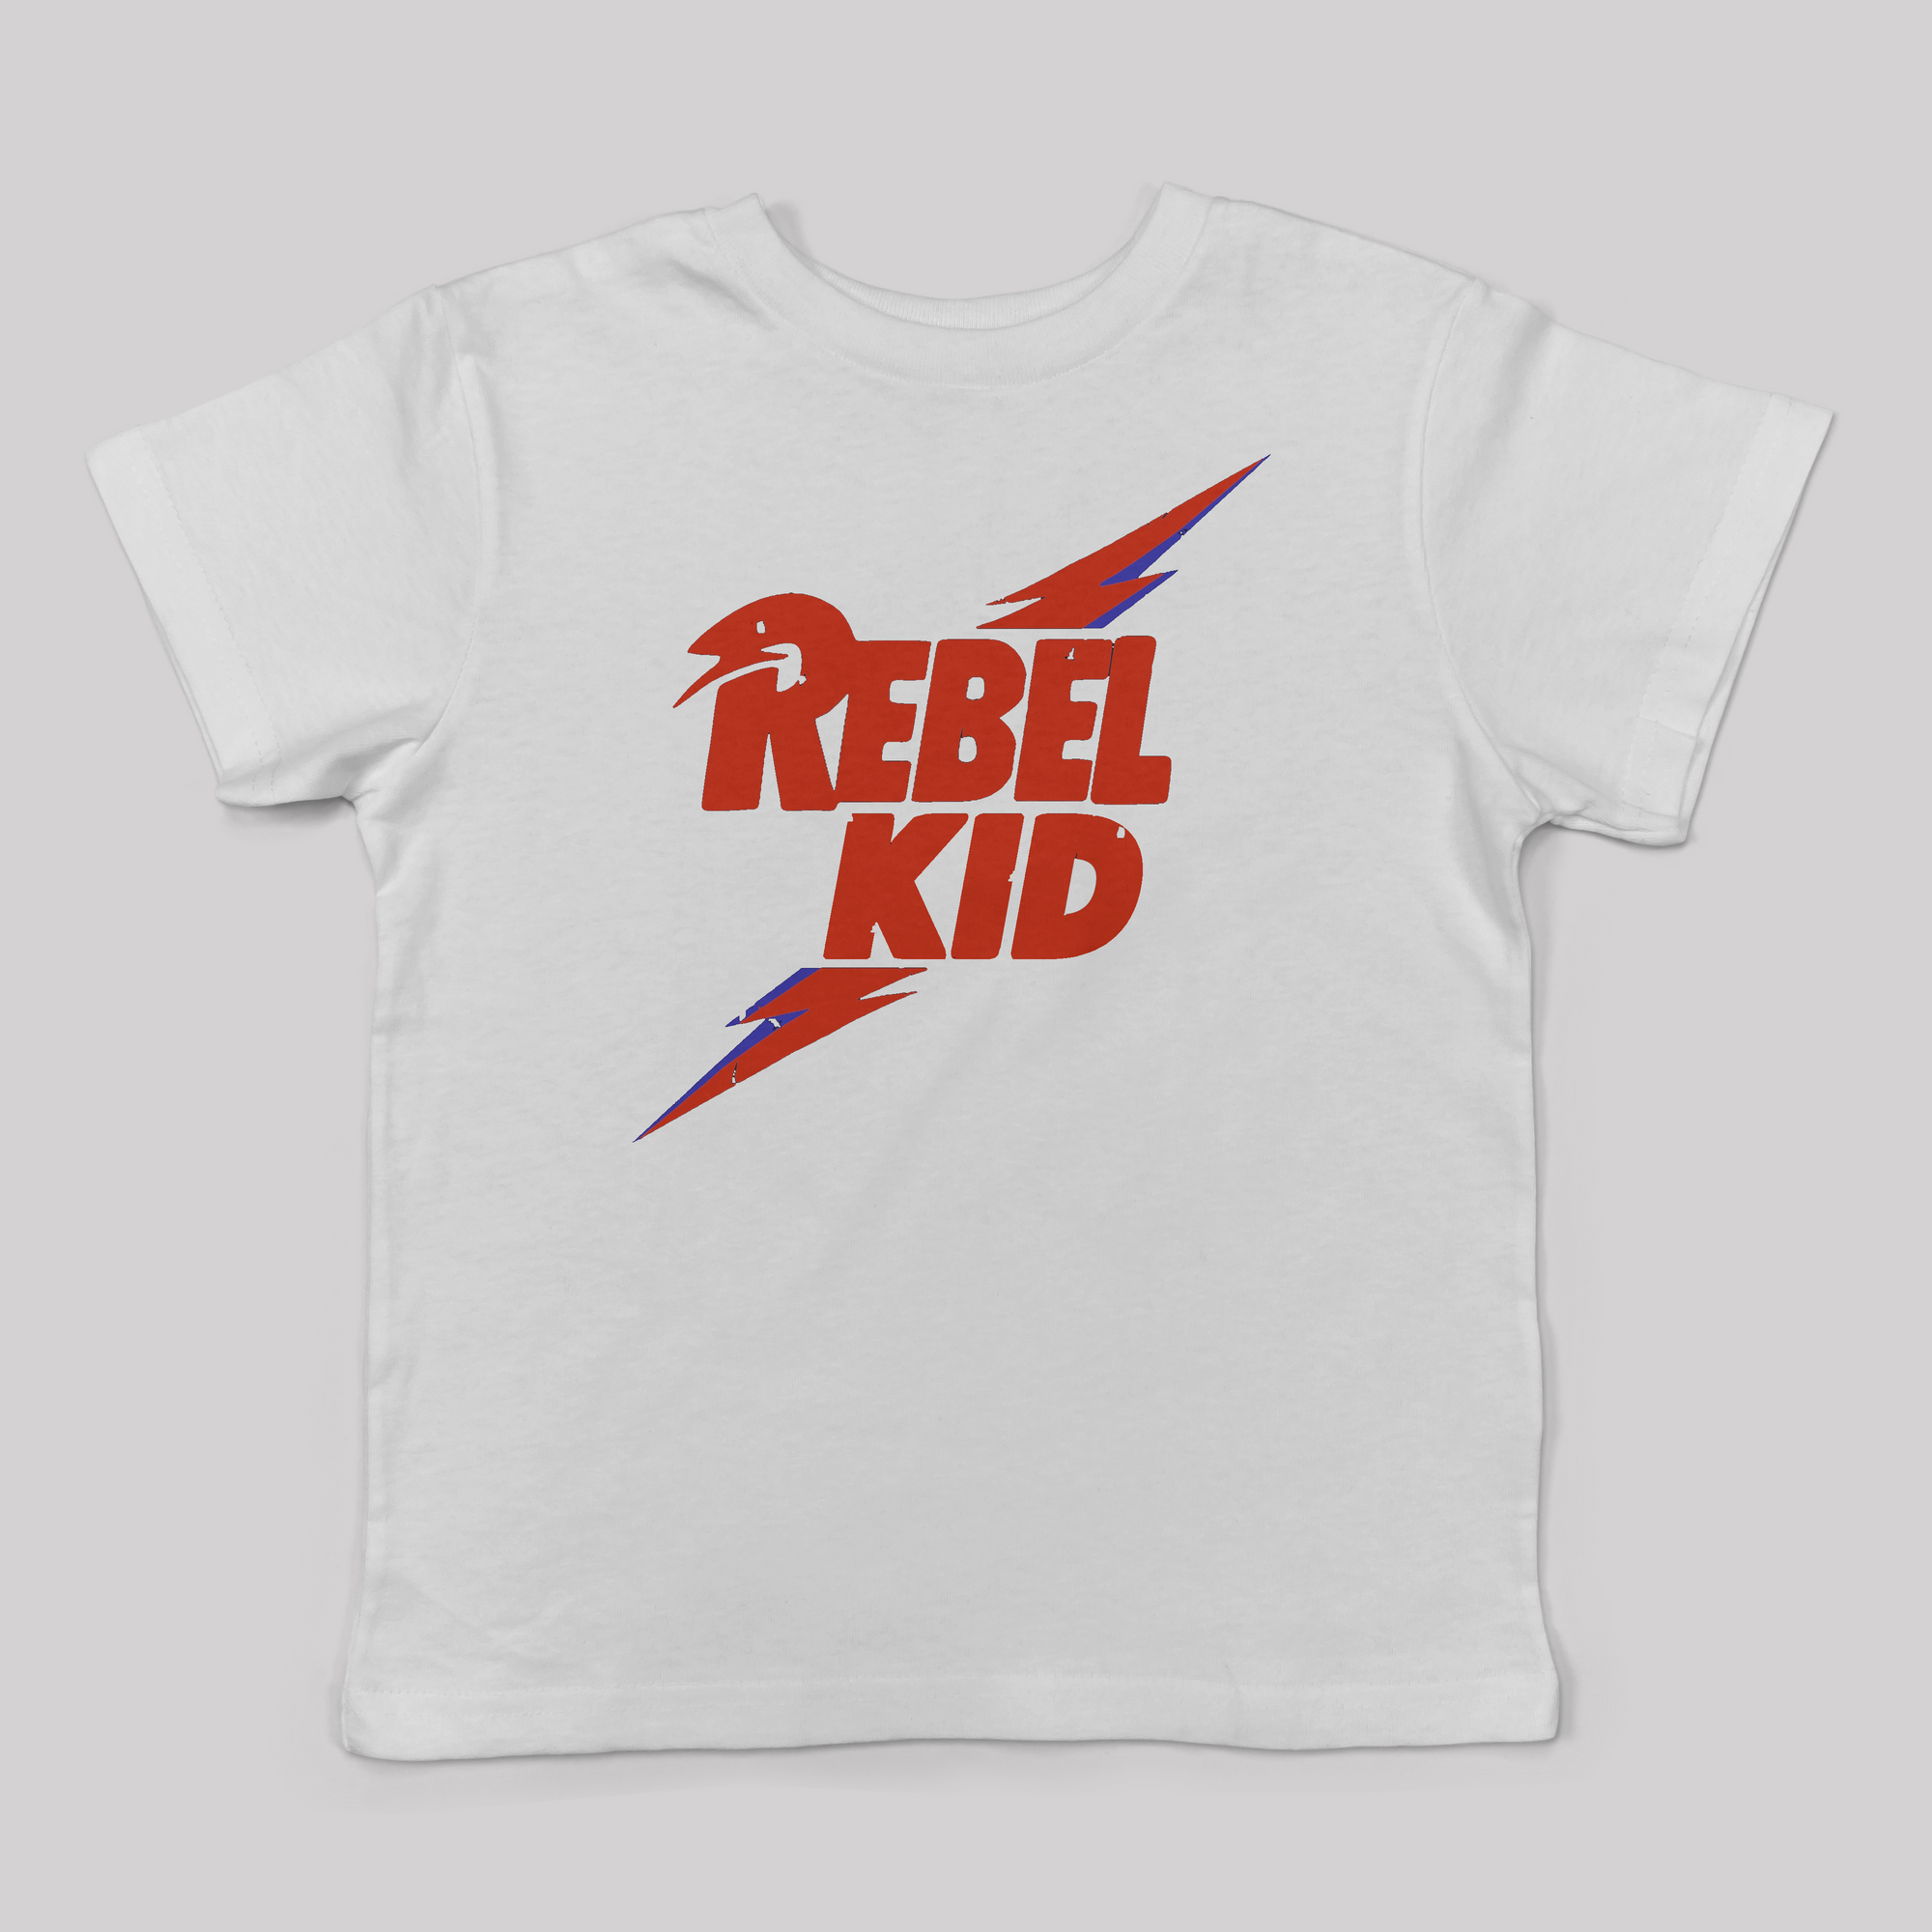 Rebel Kid Tee